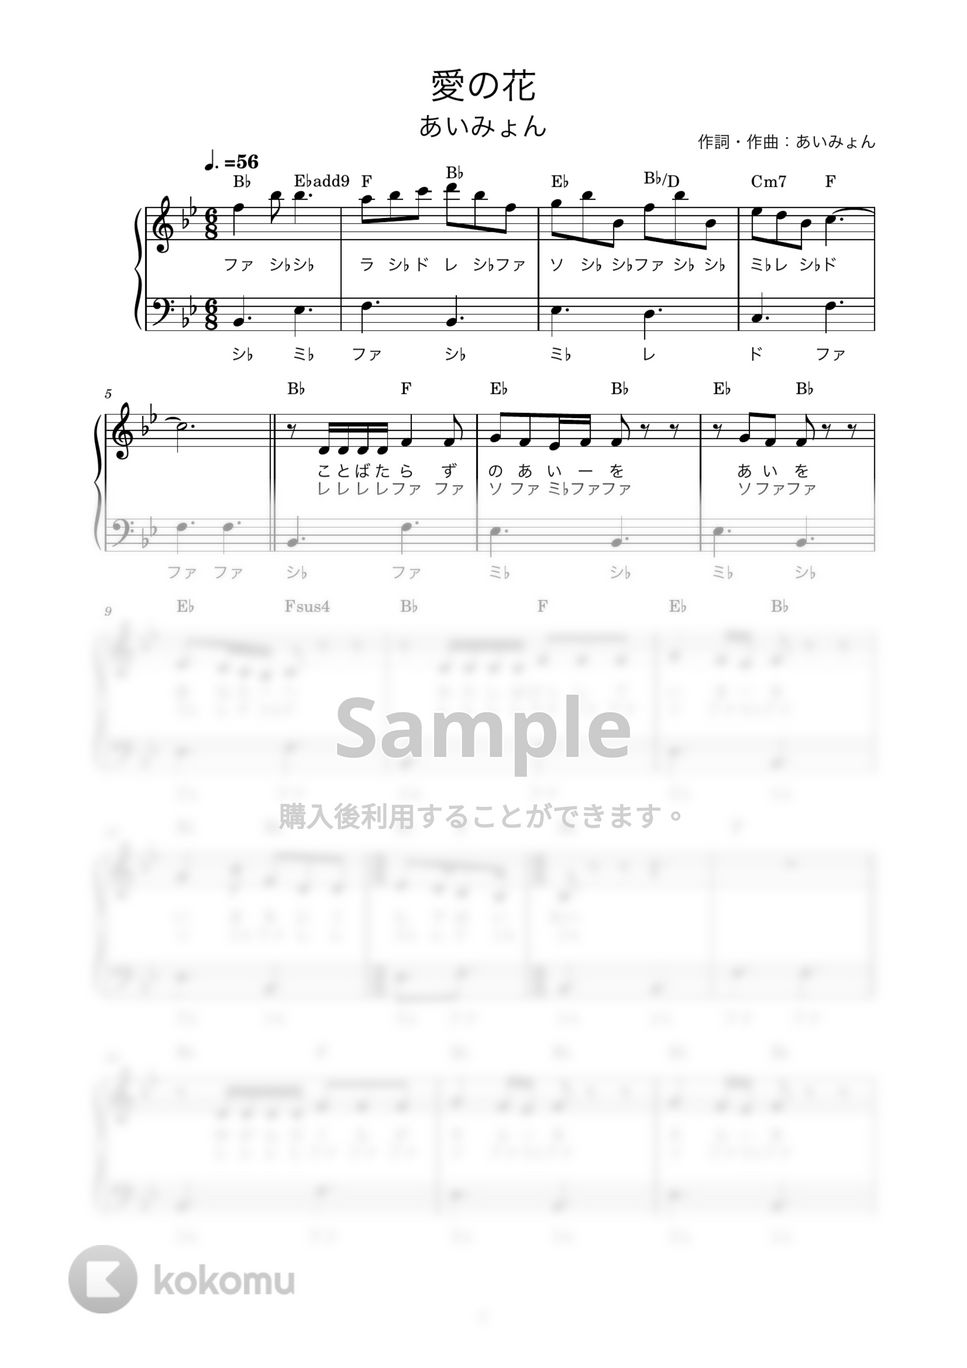 あいみょん - 愛の花 (かんたん / 歌詞付き / ドレミ付き / 初心者) by piano.tokyo